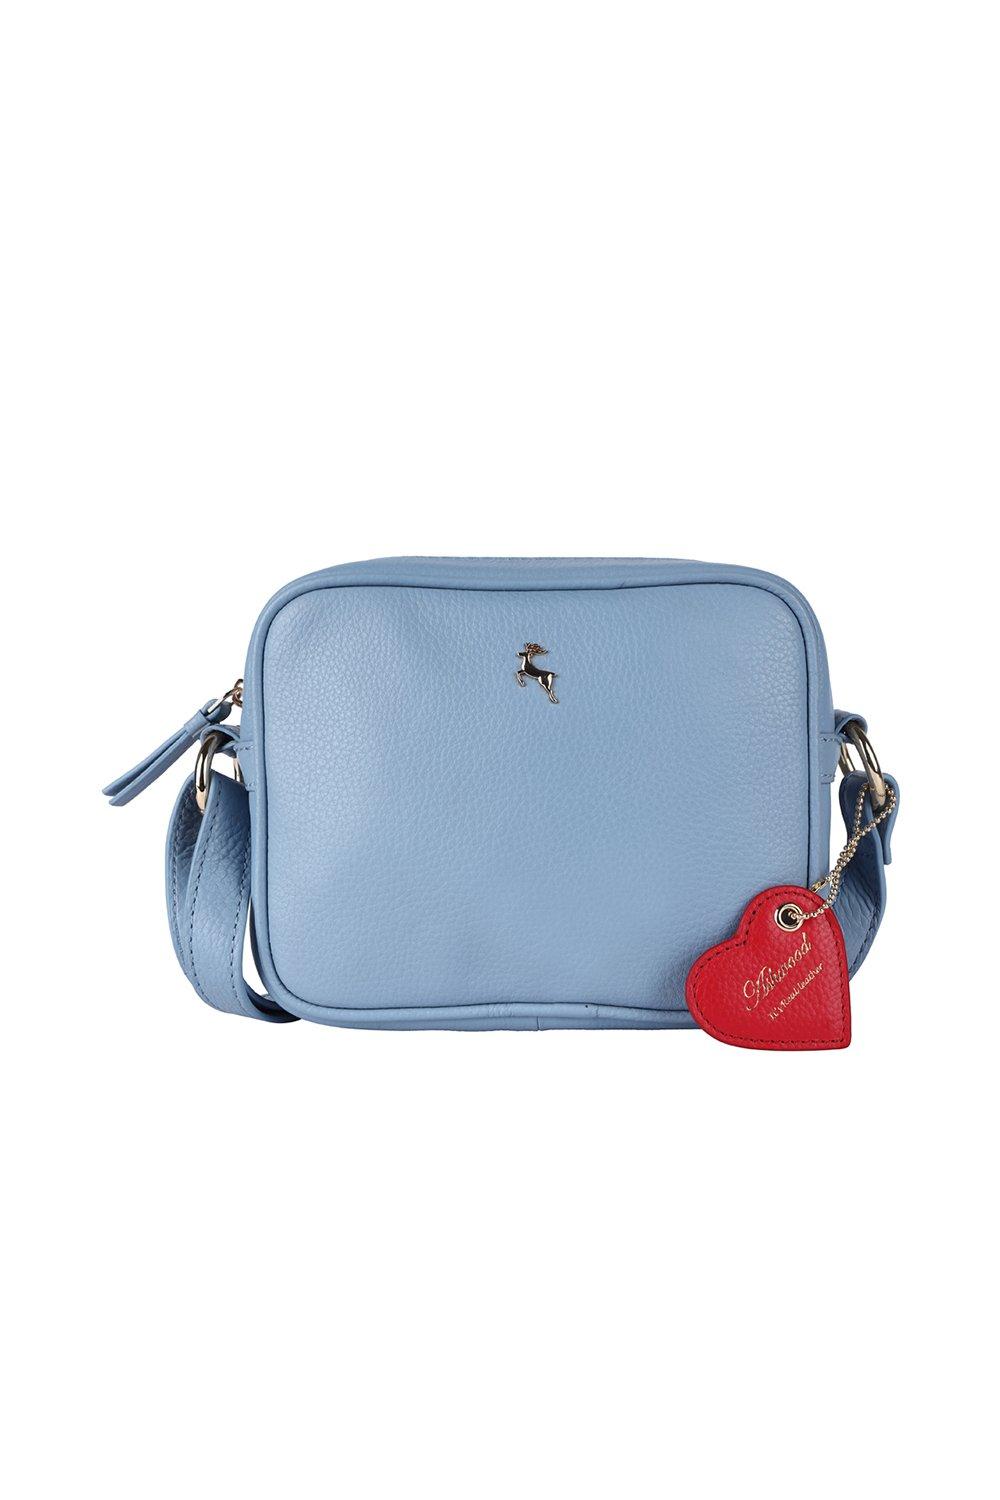 Сумка через плечо из натуральной кожи Haute с молнией сверху Ashwood Leather, синий сумка клатч классическая натуральная кожа внутренний карман фиолетовый